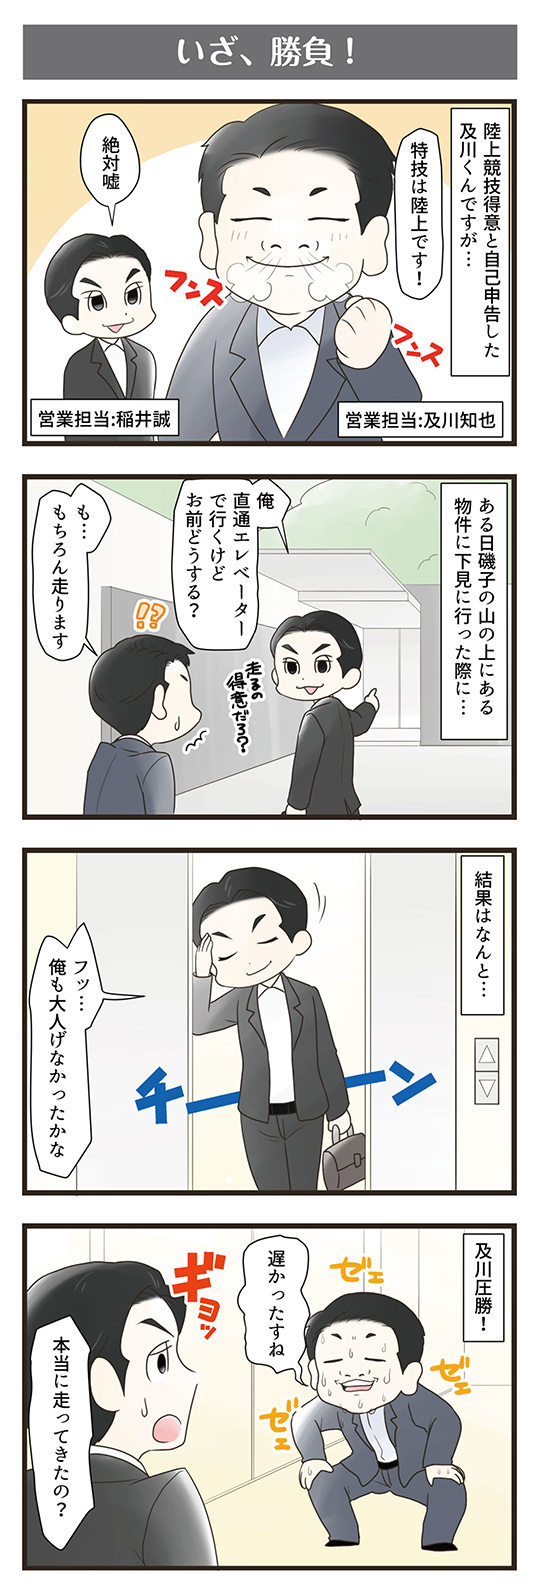 横浜スタイル4コマ漫画8月分